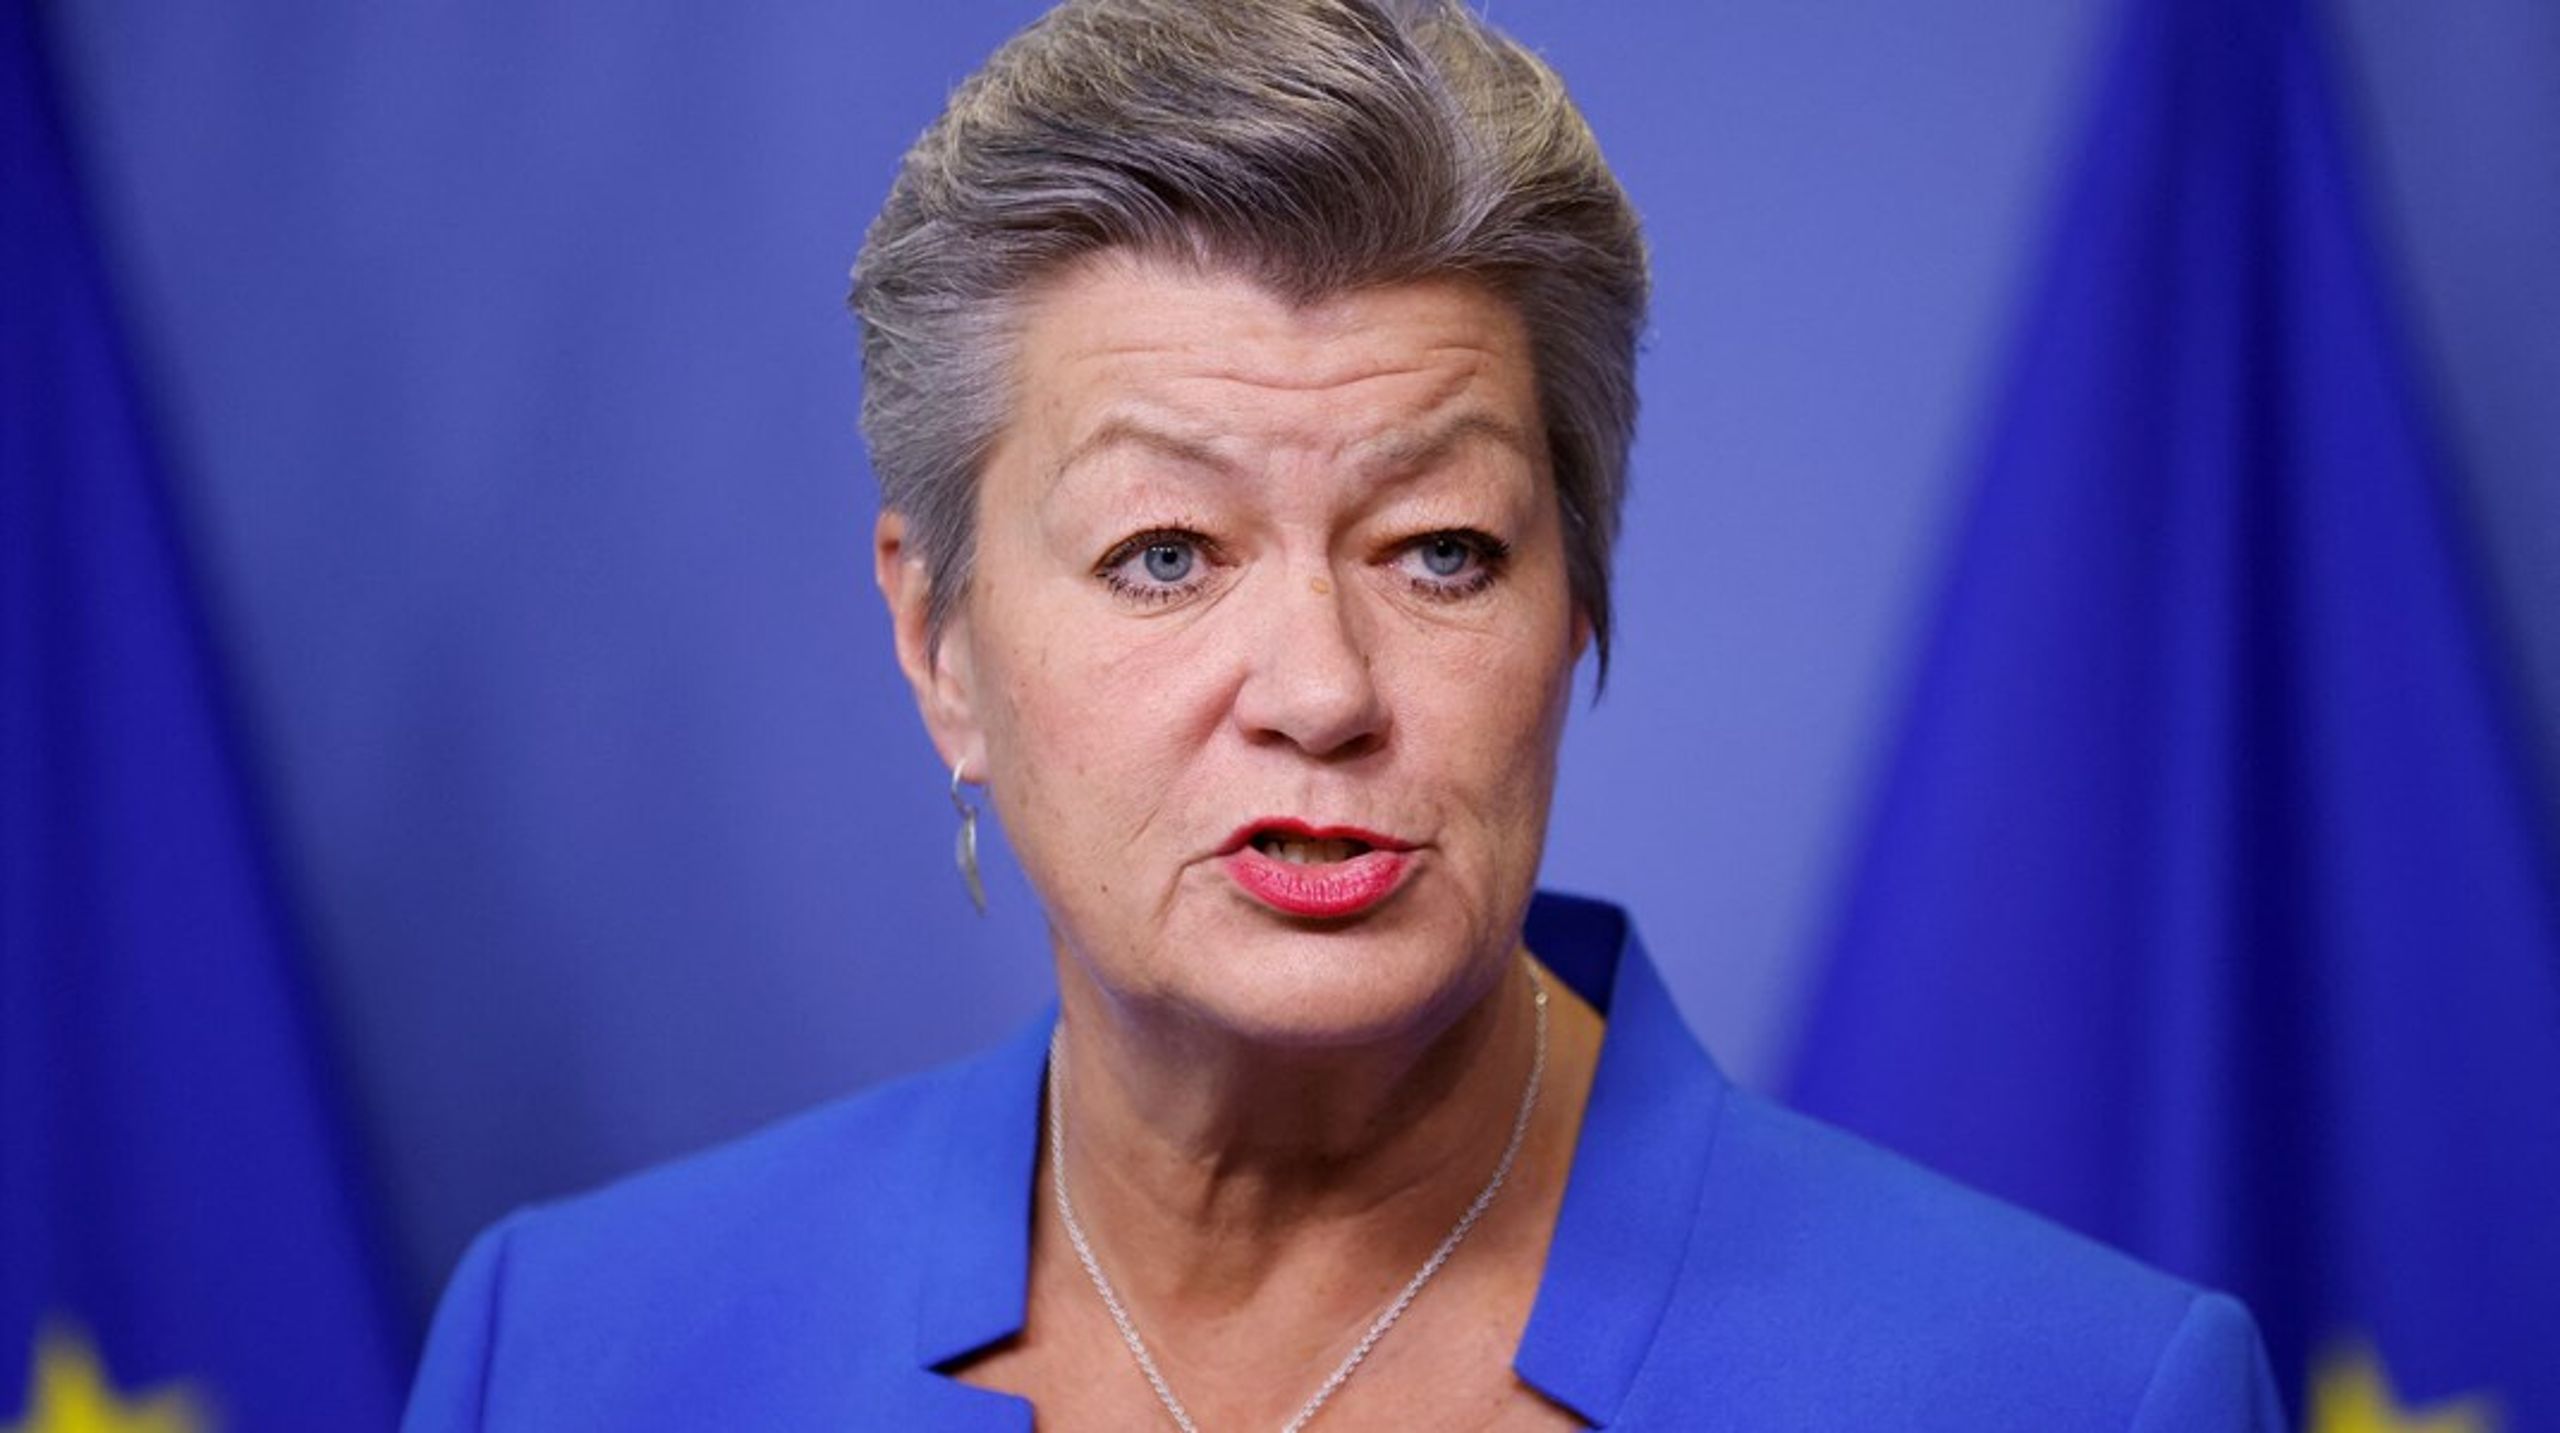 Svenske Ylva Johansson er den kommissær, der står bag det kontroversielle lovforslag, der skal forebygge og bekæmpe seksuelt misbrug af børn online.